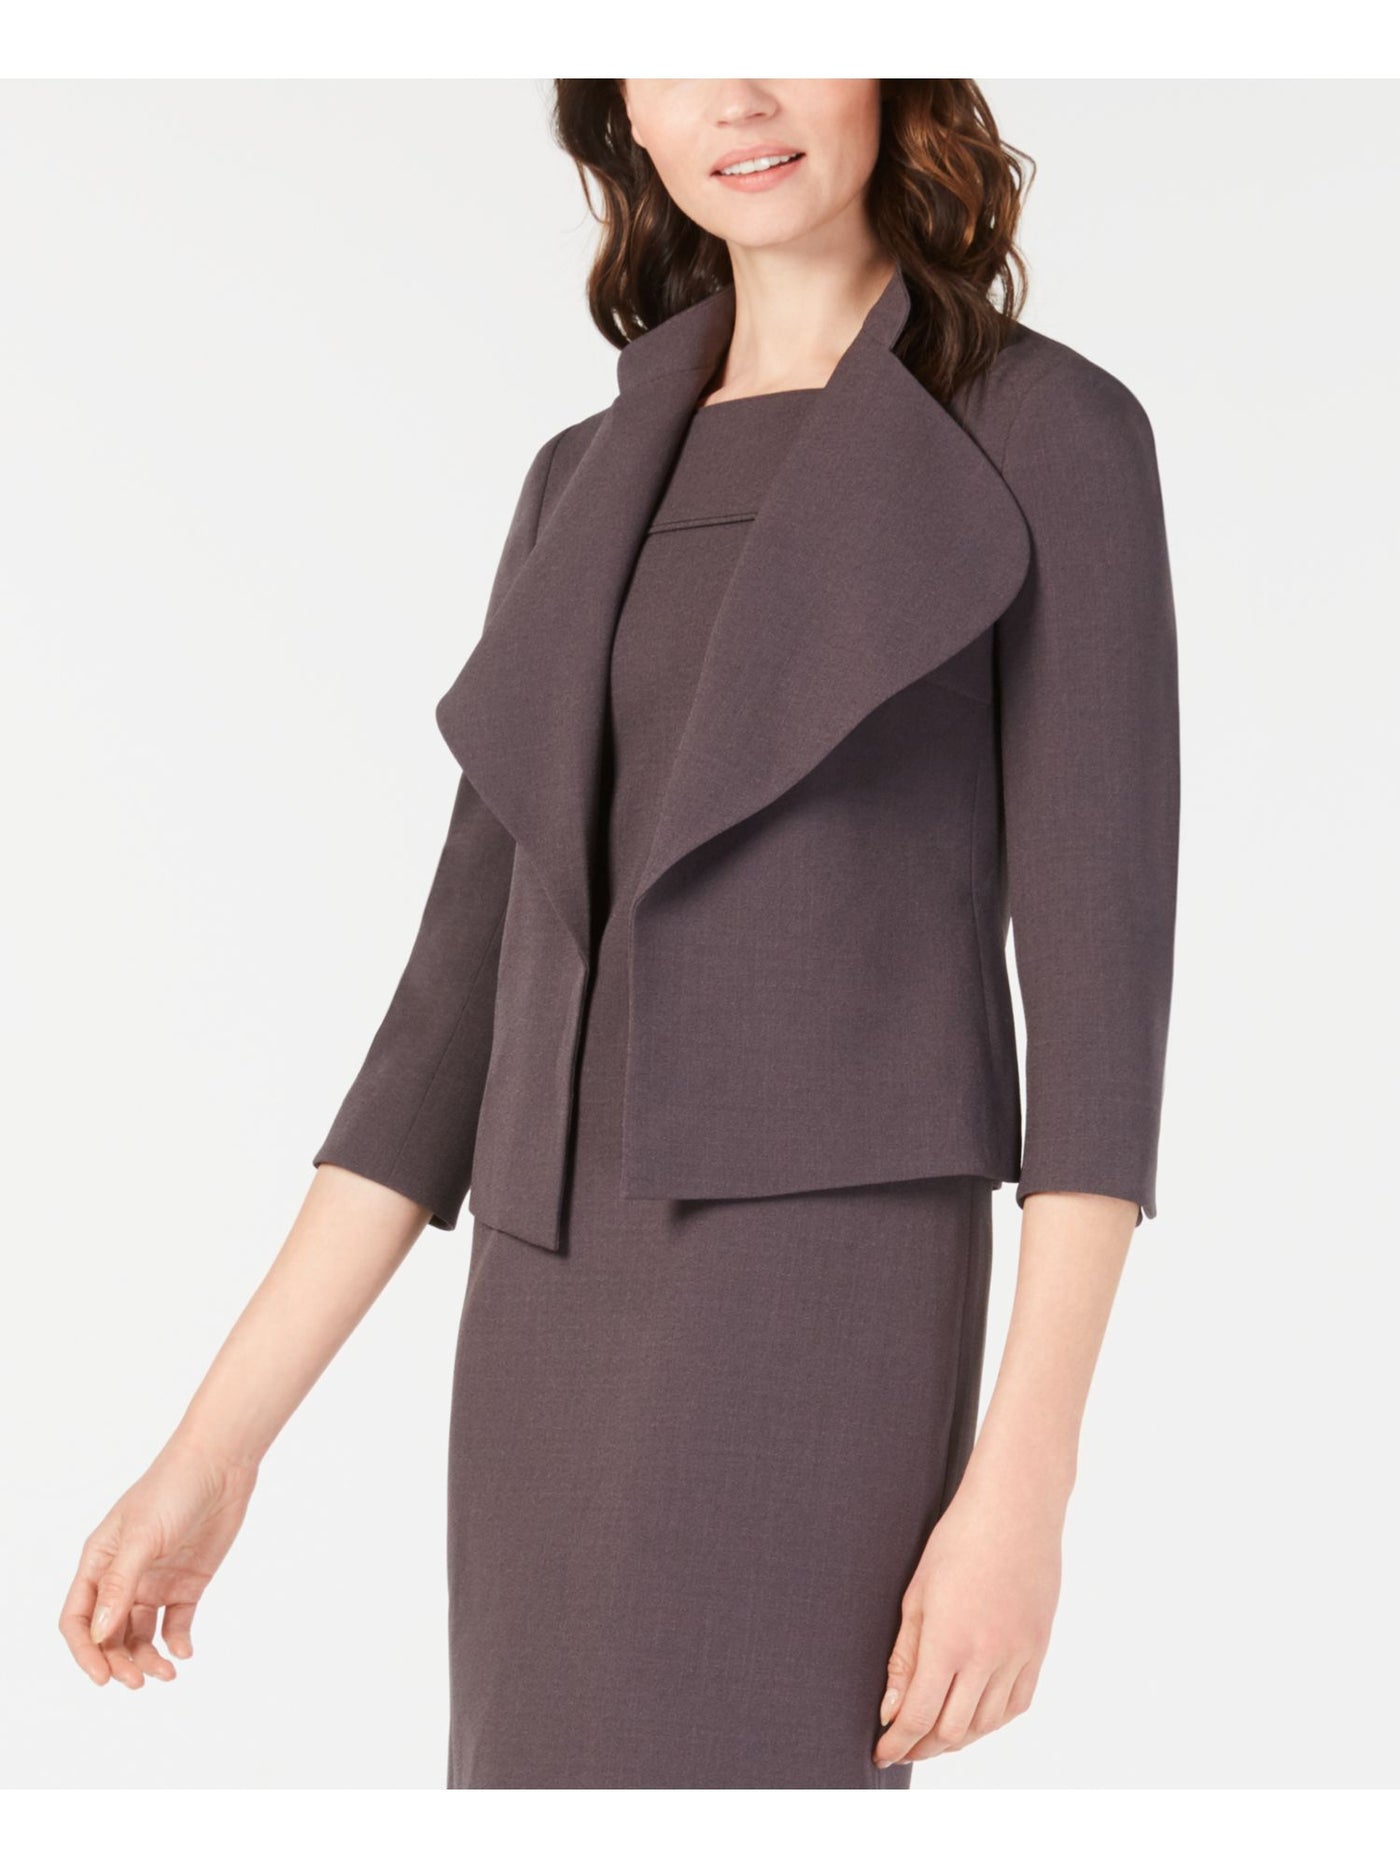 ANNE KLEIN Womens Gray Jacket Size: 0